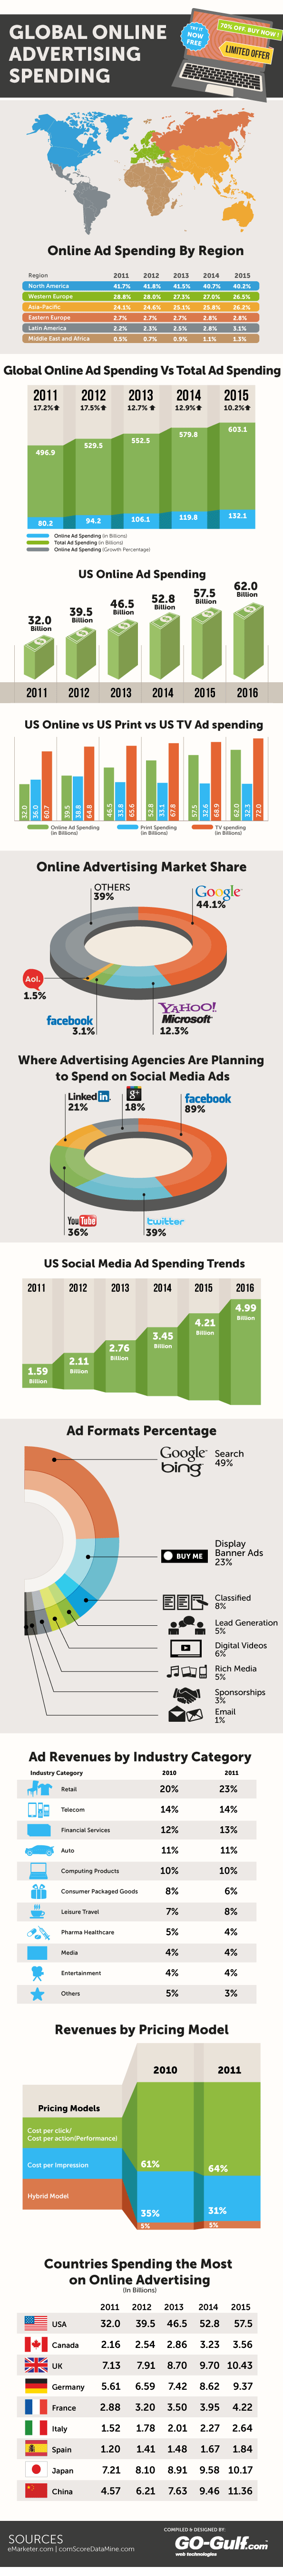 Global Online Advertising Spending